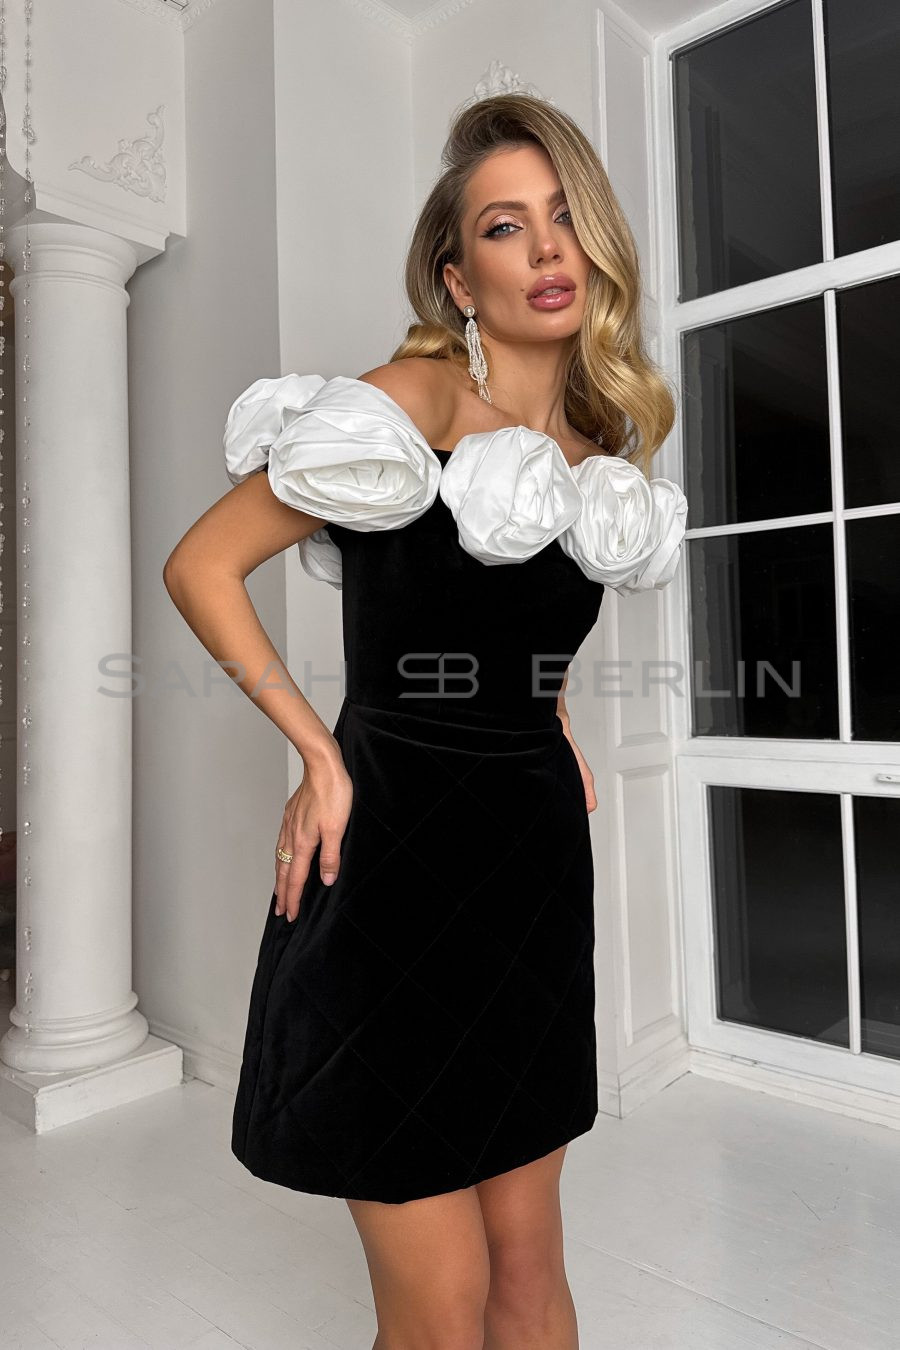 Платье выше колен из итальянского бархата, с открытыми плечами, с белыми розами